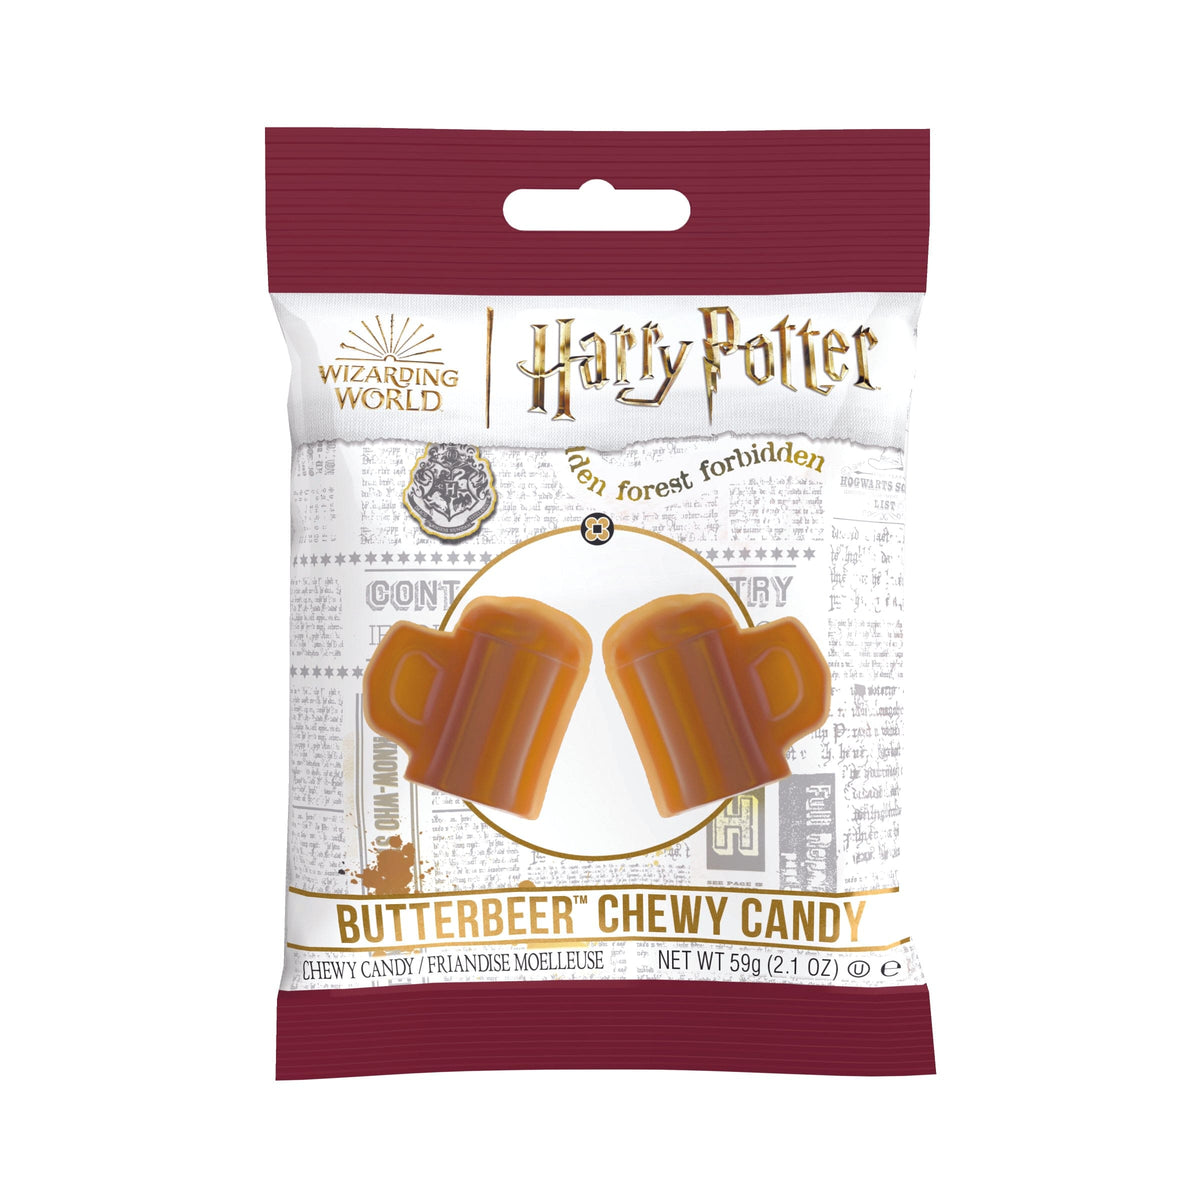 Lolli and Pops Novelty Harry Potter Butterbeer Bag